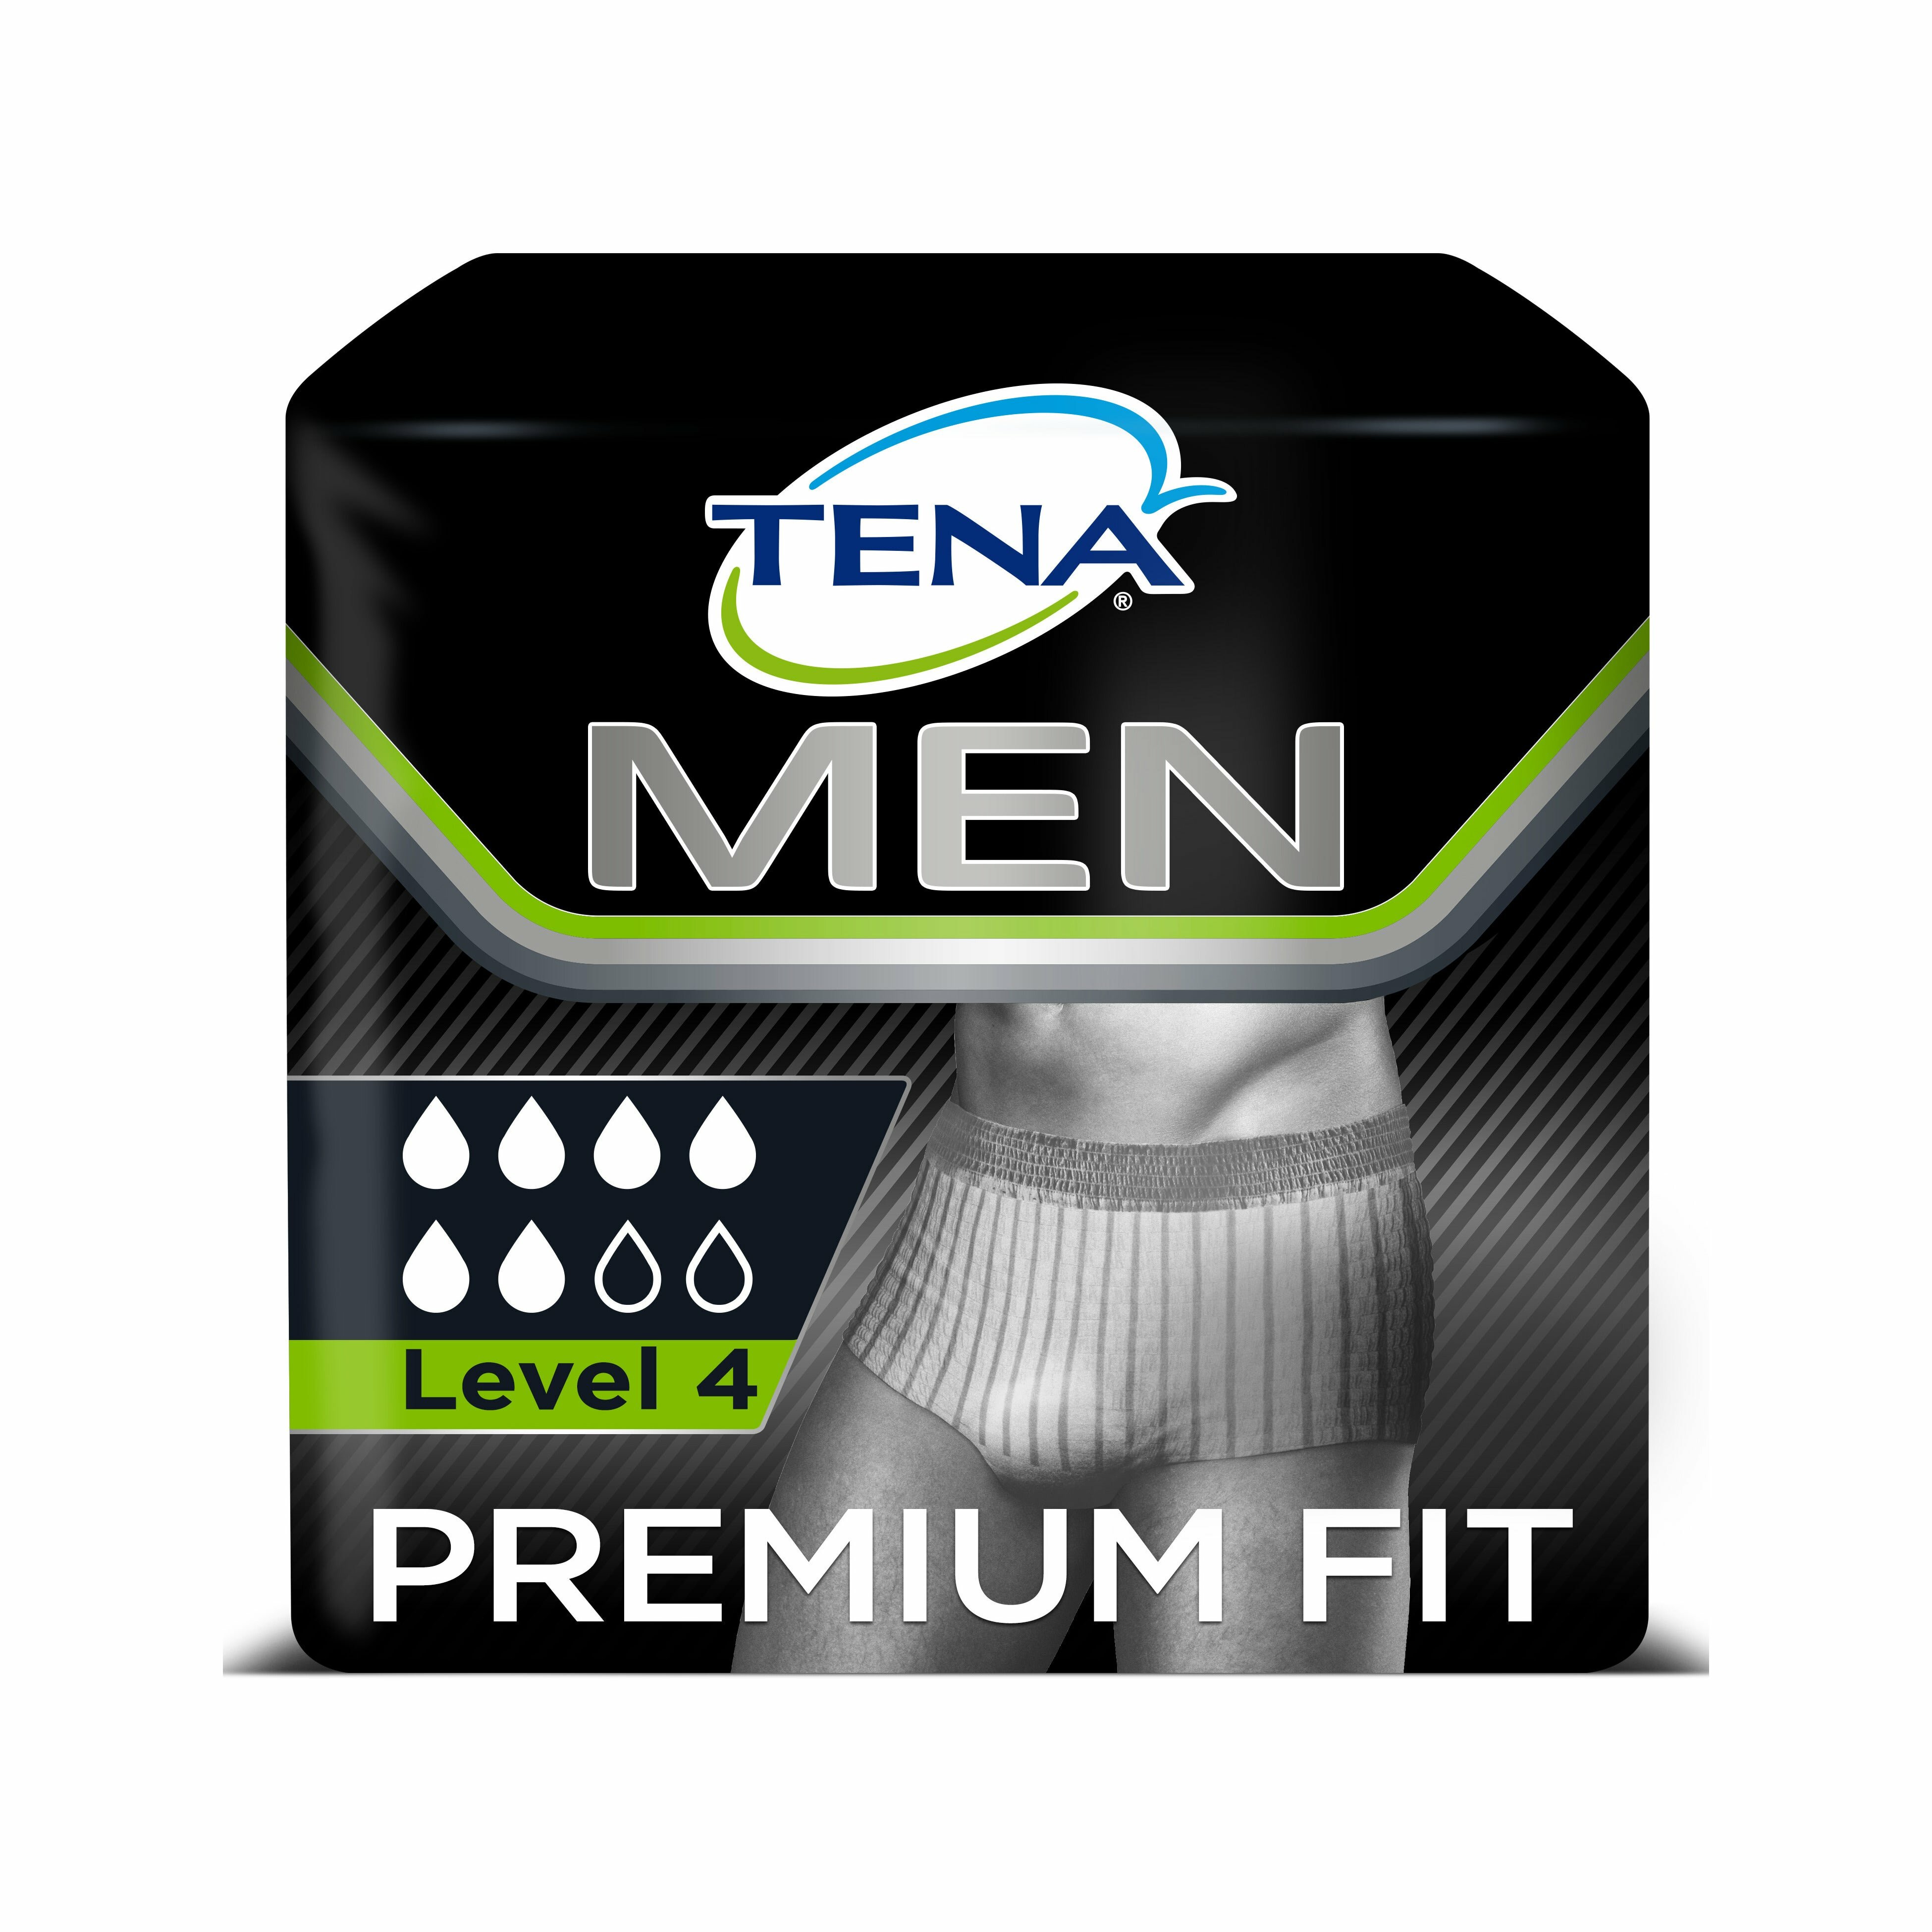 Protezione assorbente TENA Men Active Fit Livello 1